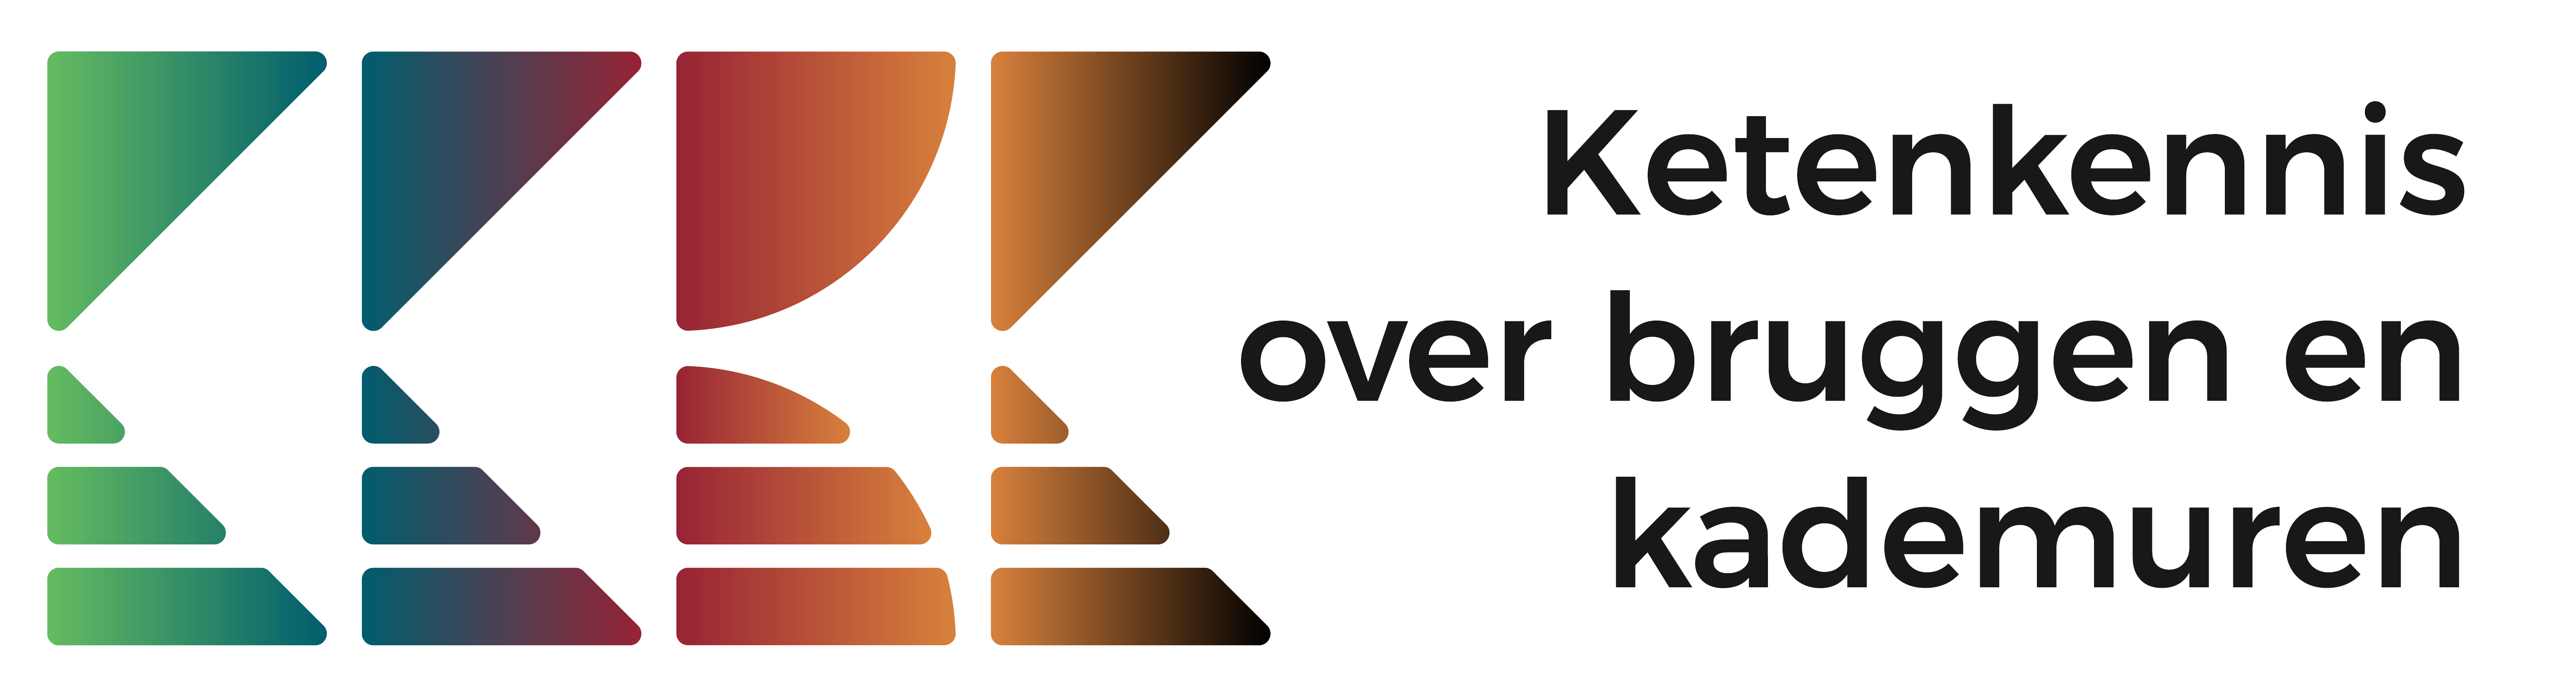 Ketenkennis over Bruggen en Kademuren logo